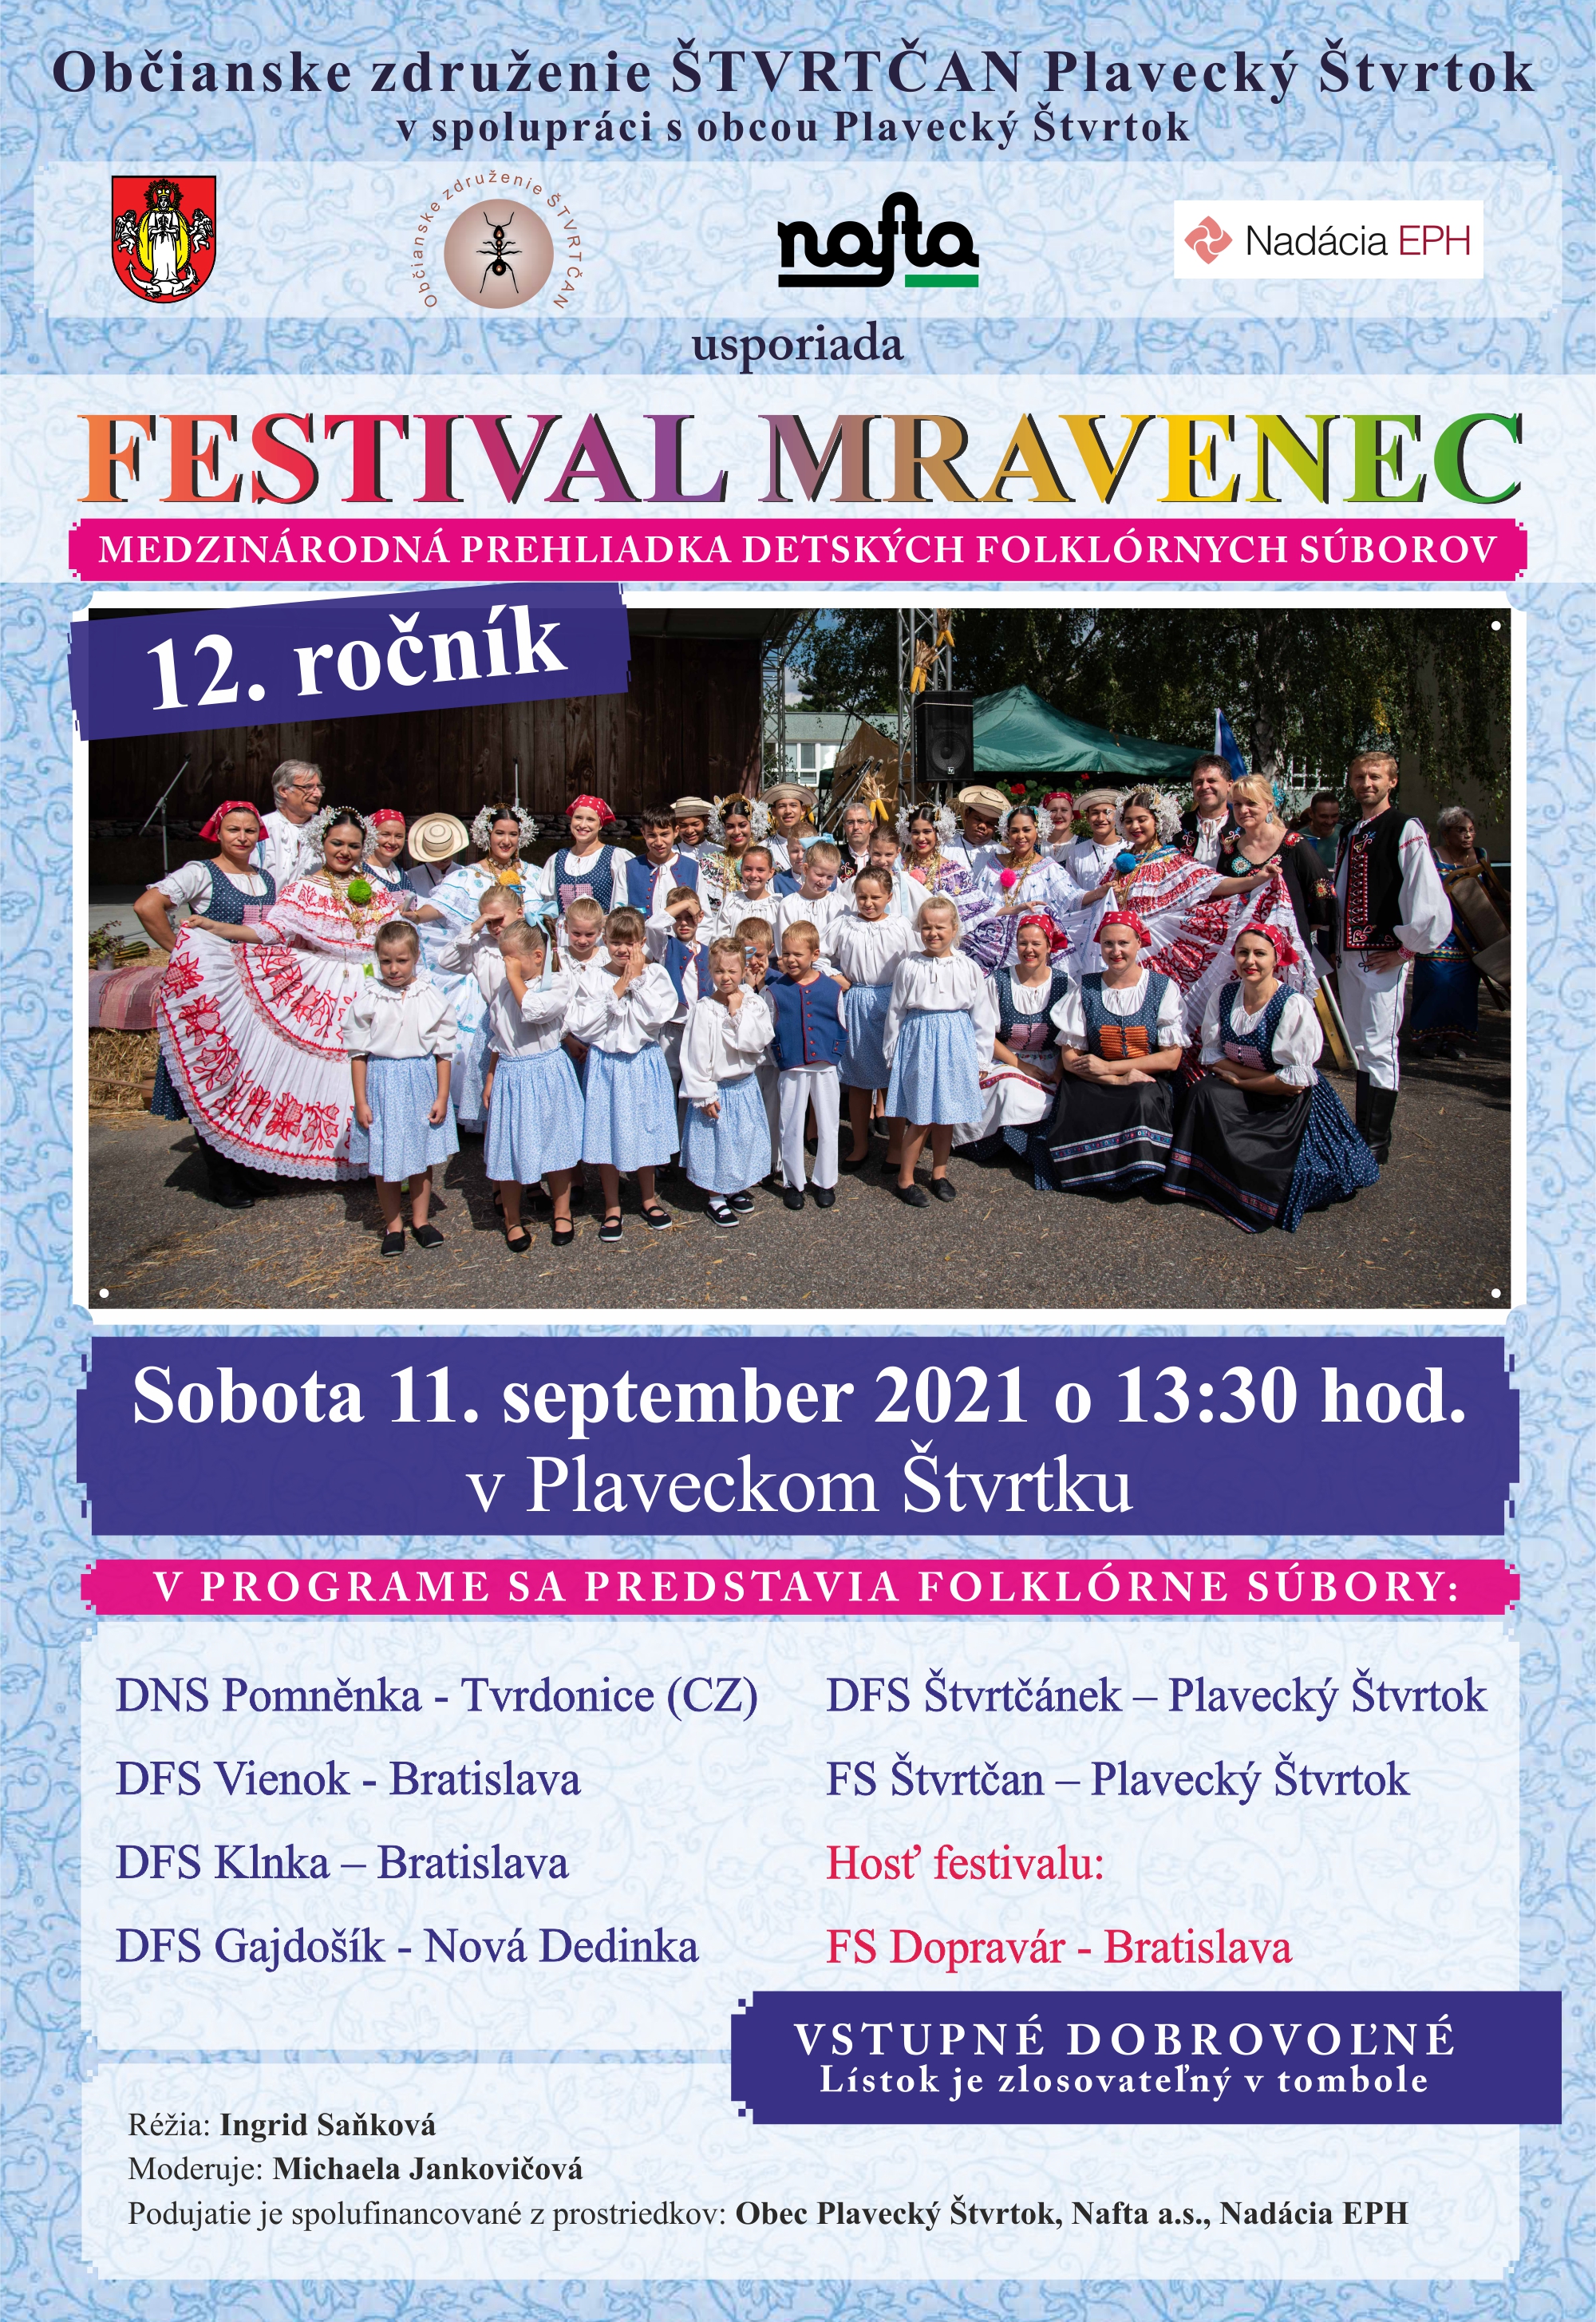 NOV - - - Festival Mravenec 2021 Plaveck tvrtok - 12. ronk medzinrodnej prehliadky detskch folklrnych sborov